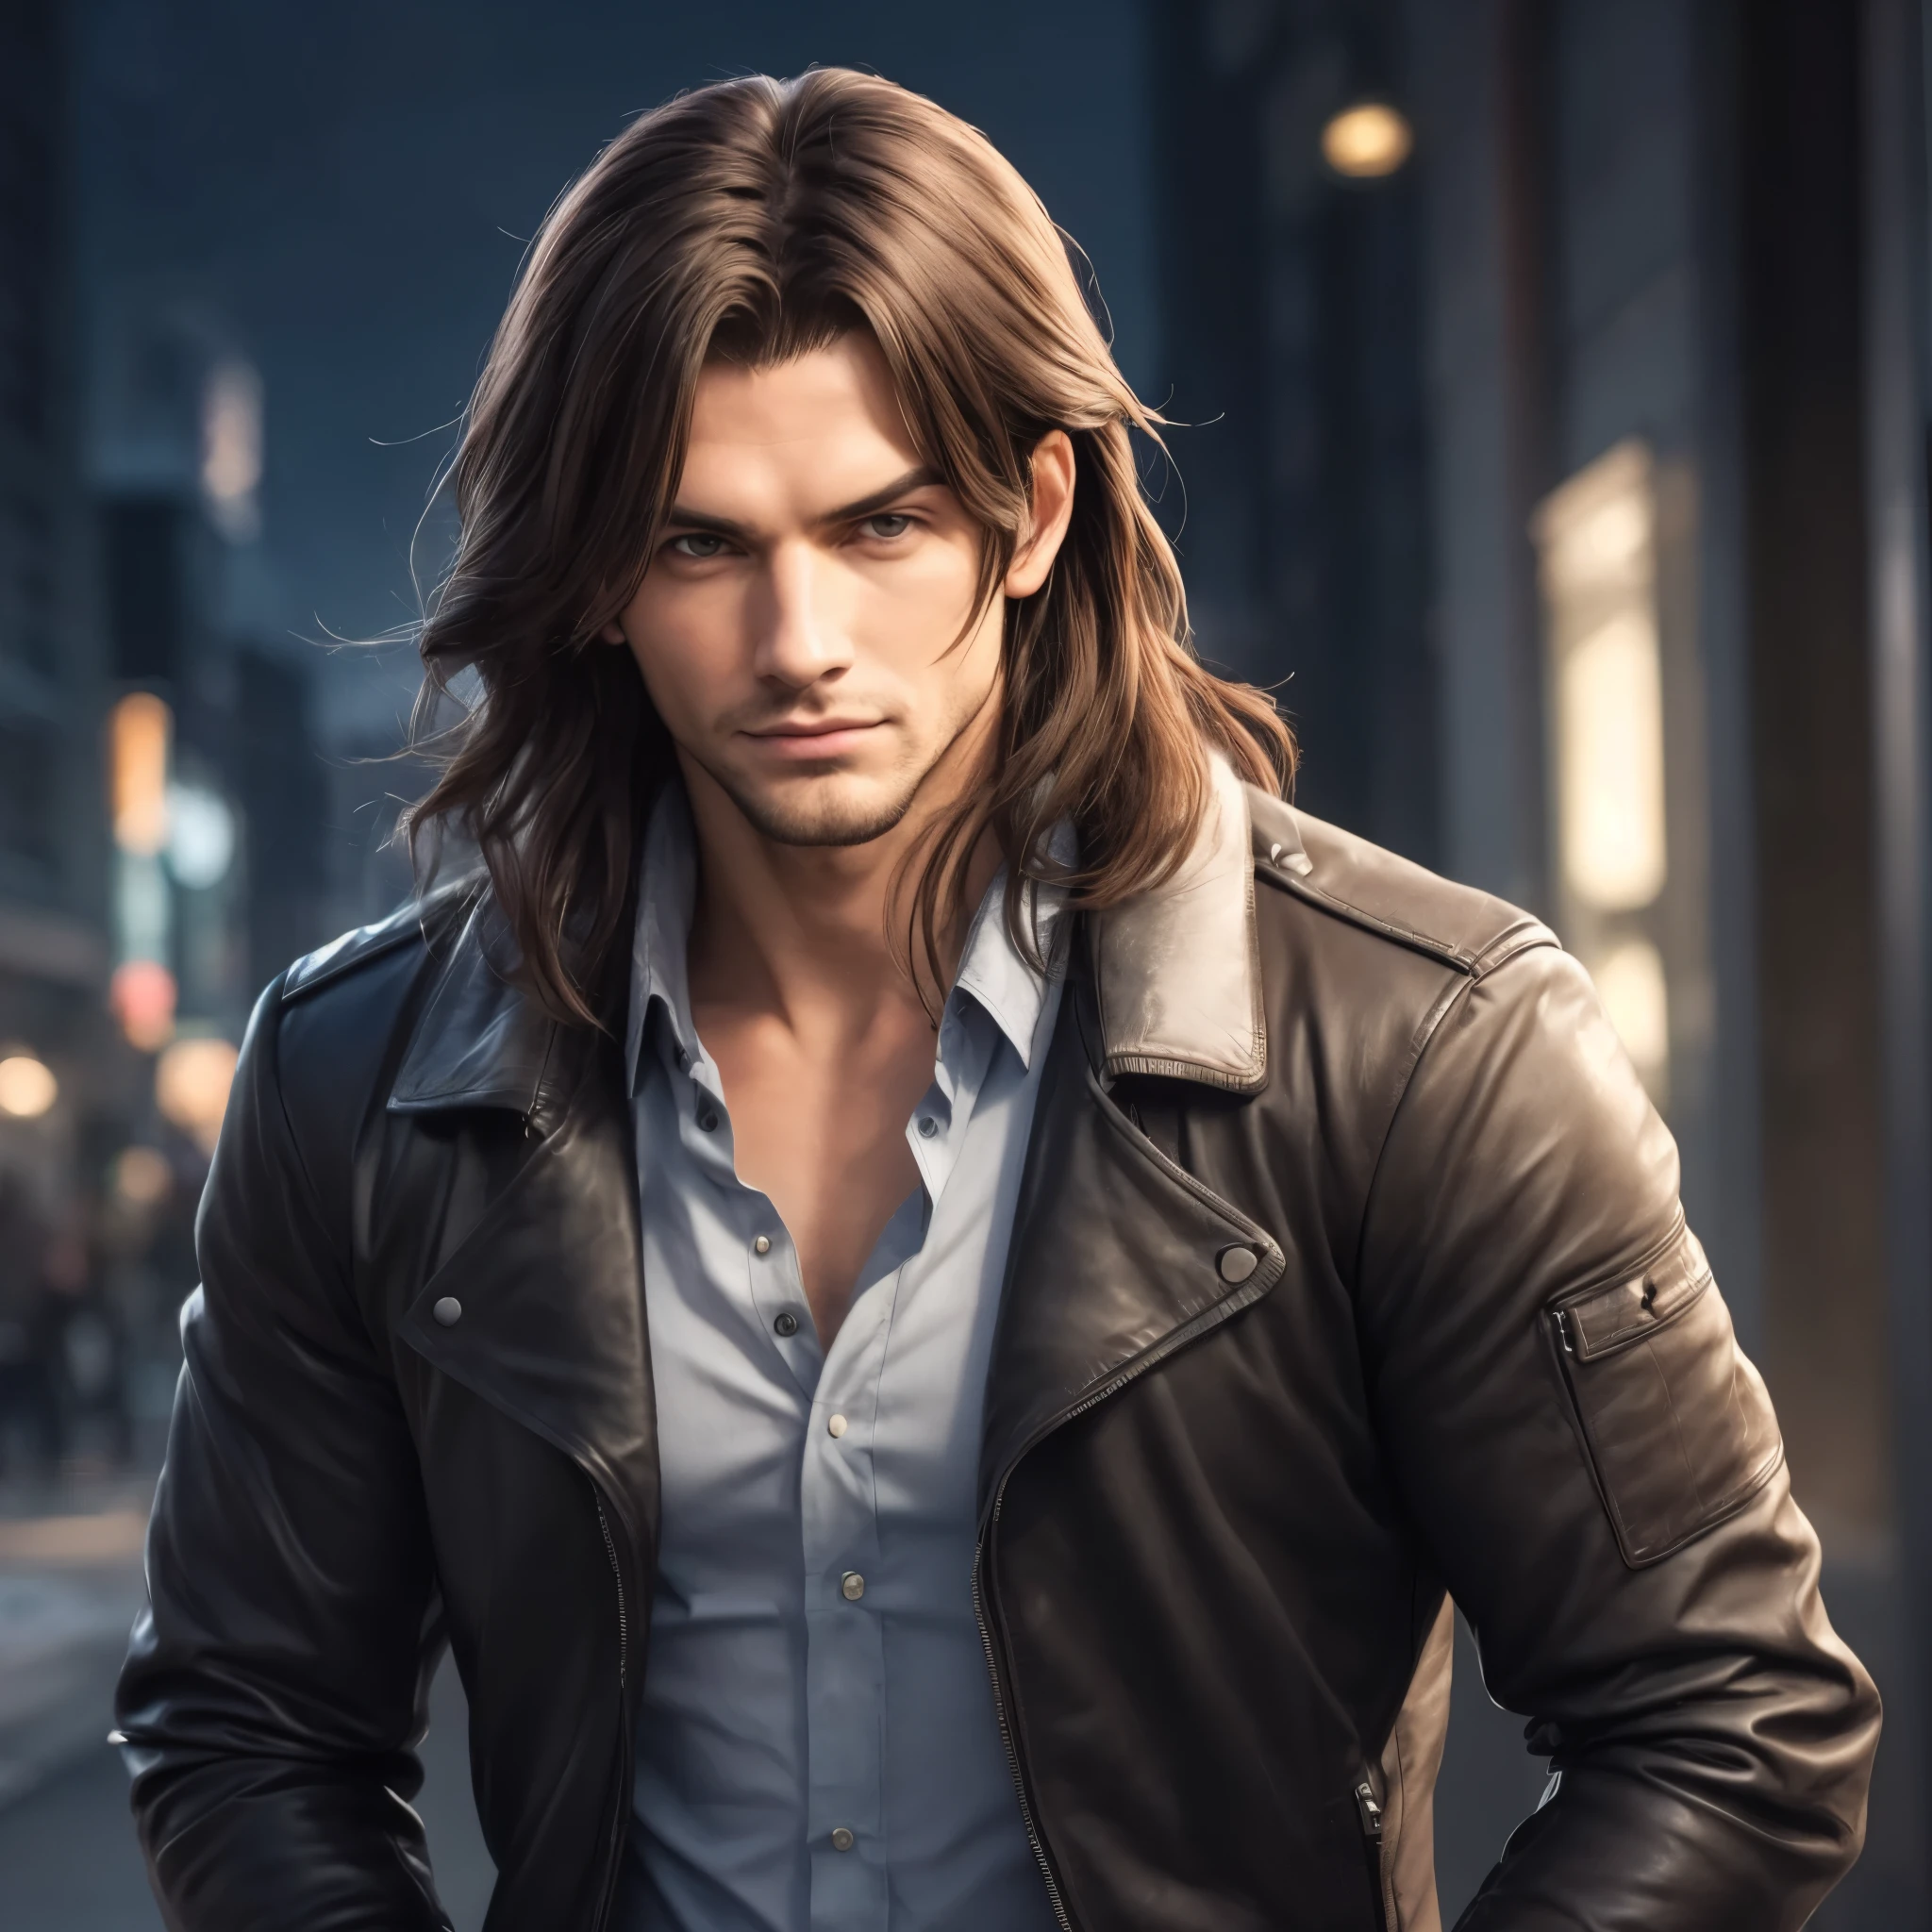 Un hombre guapo con el pelo largo y una chaqueta de cuero parado en una ciudad